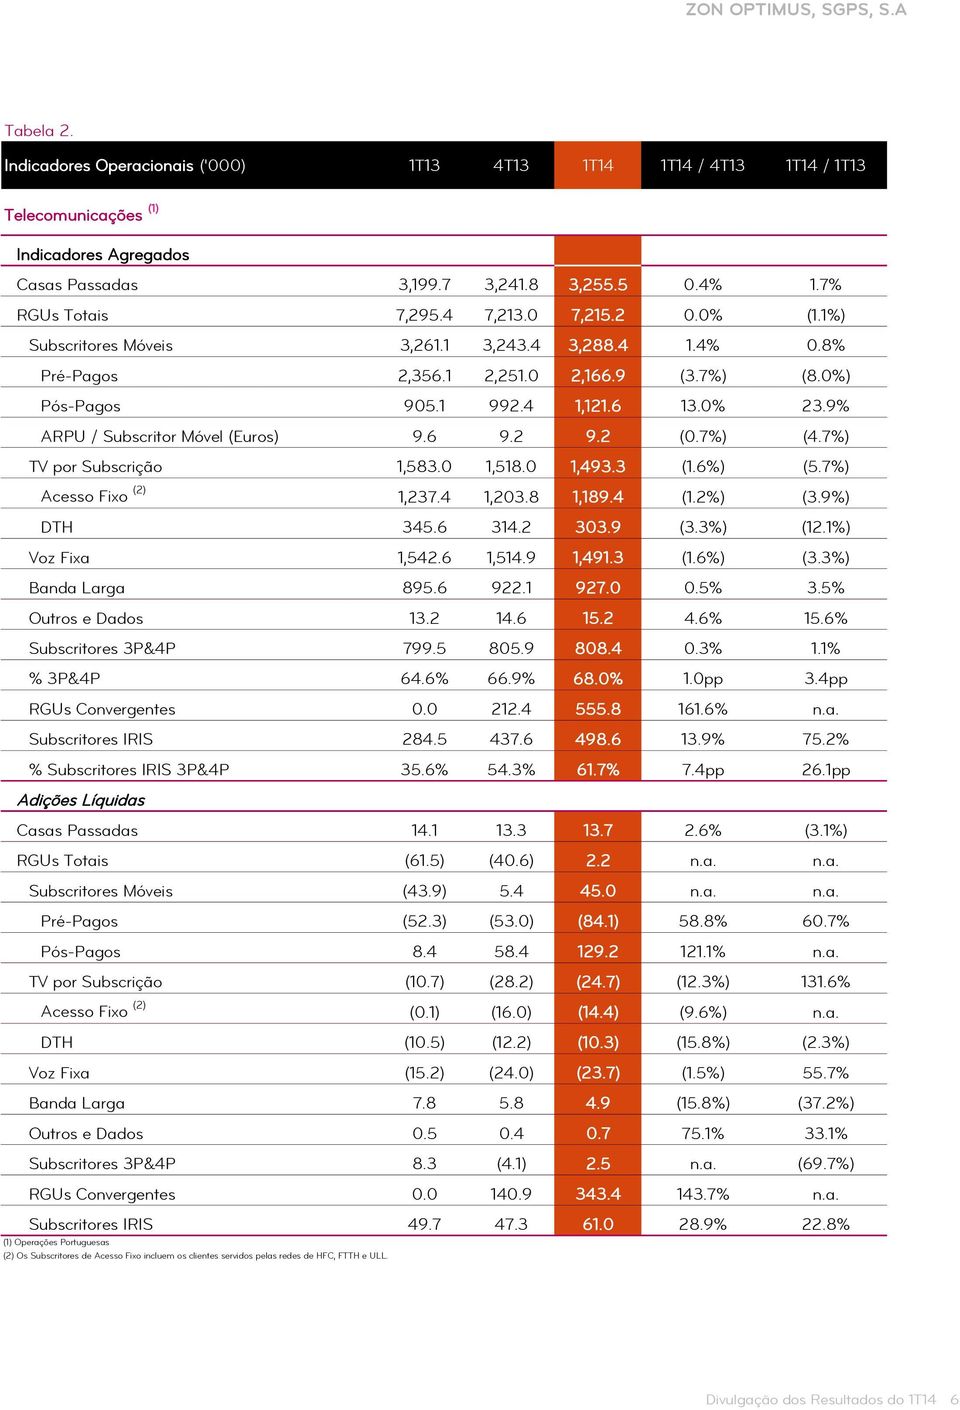 6 9.2 9.2 (0.7%) (4.7%) TV por Subscrição 1,583.0 1,518.0 1,493.3 (1.6%) (5.7%) Acesso Fixo (2) 1,237.4 1,203.8 1,189.4 (1.2%) (3.9%) DTH 345.6 314.2 303.9 (3.3%) (12.1%) Voz Fixa 1,542.6 1,514.